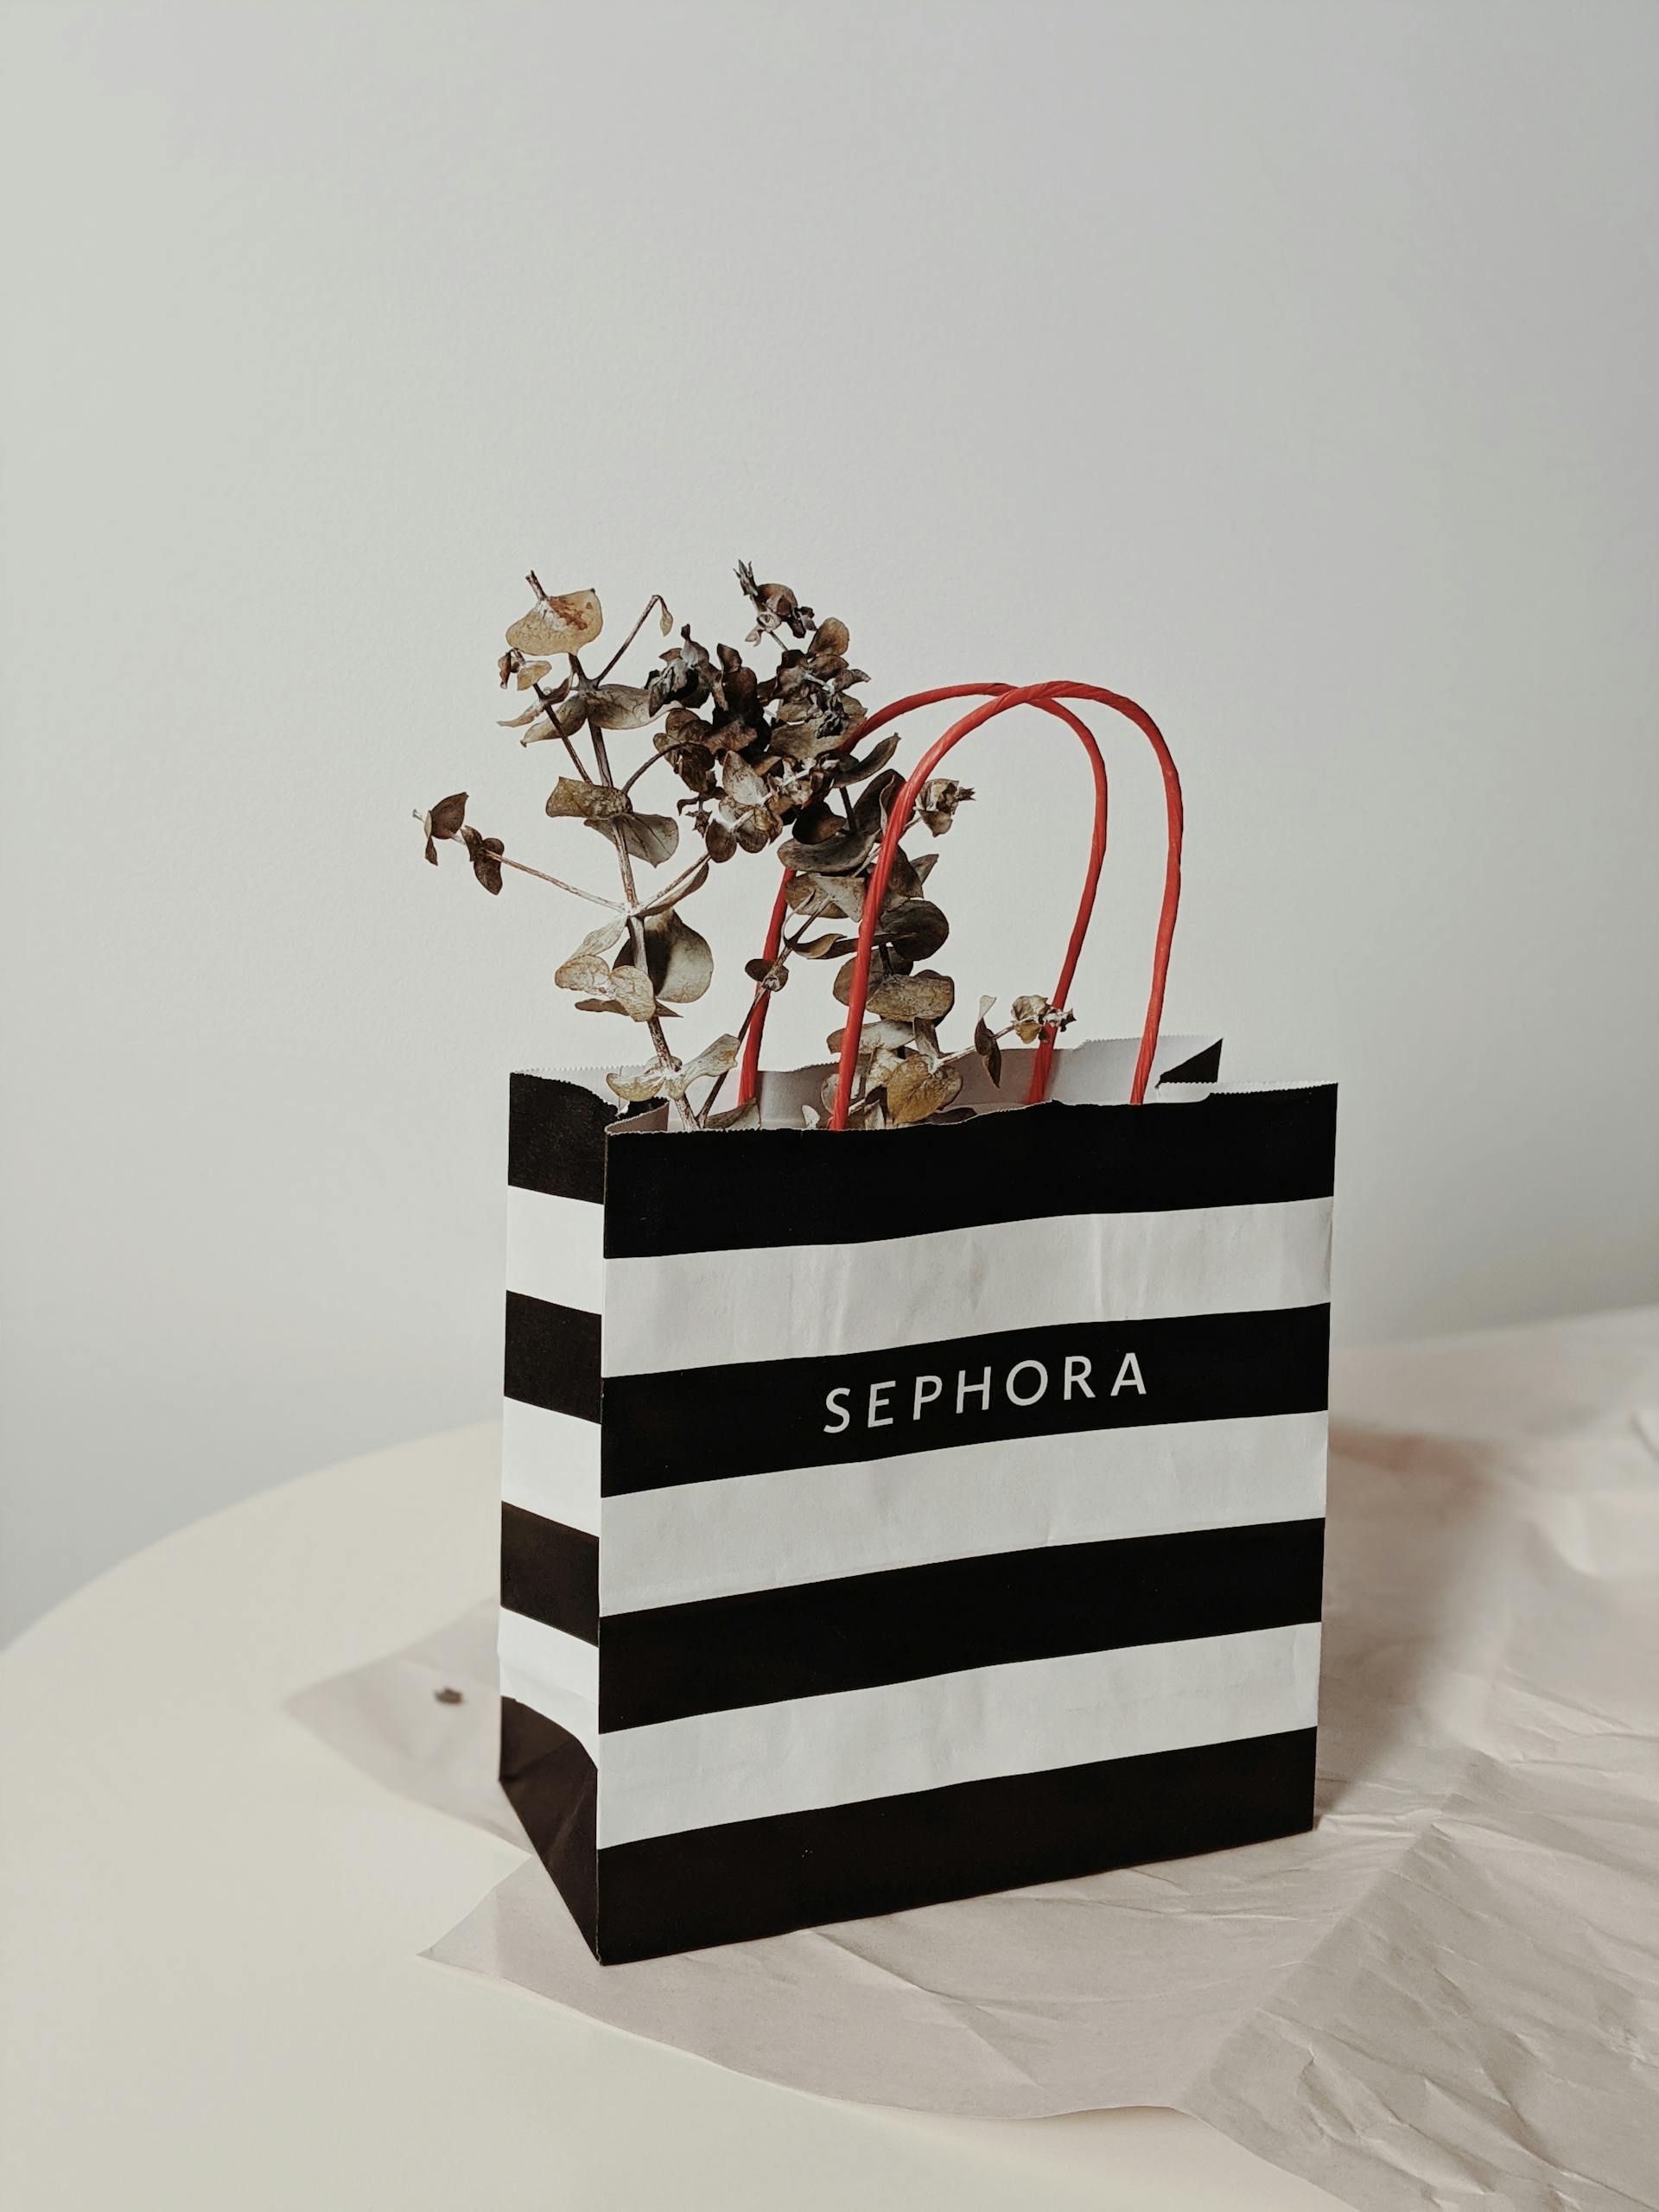 A Sephora bag | Source: Pexels